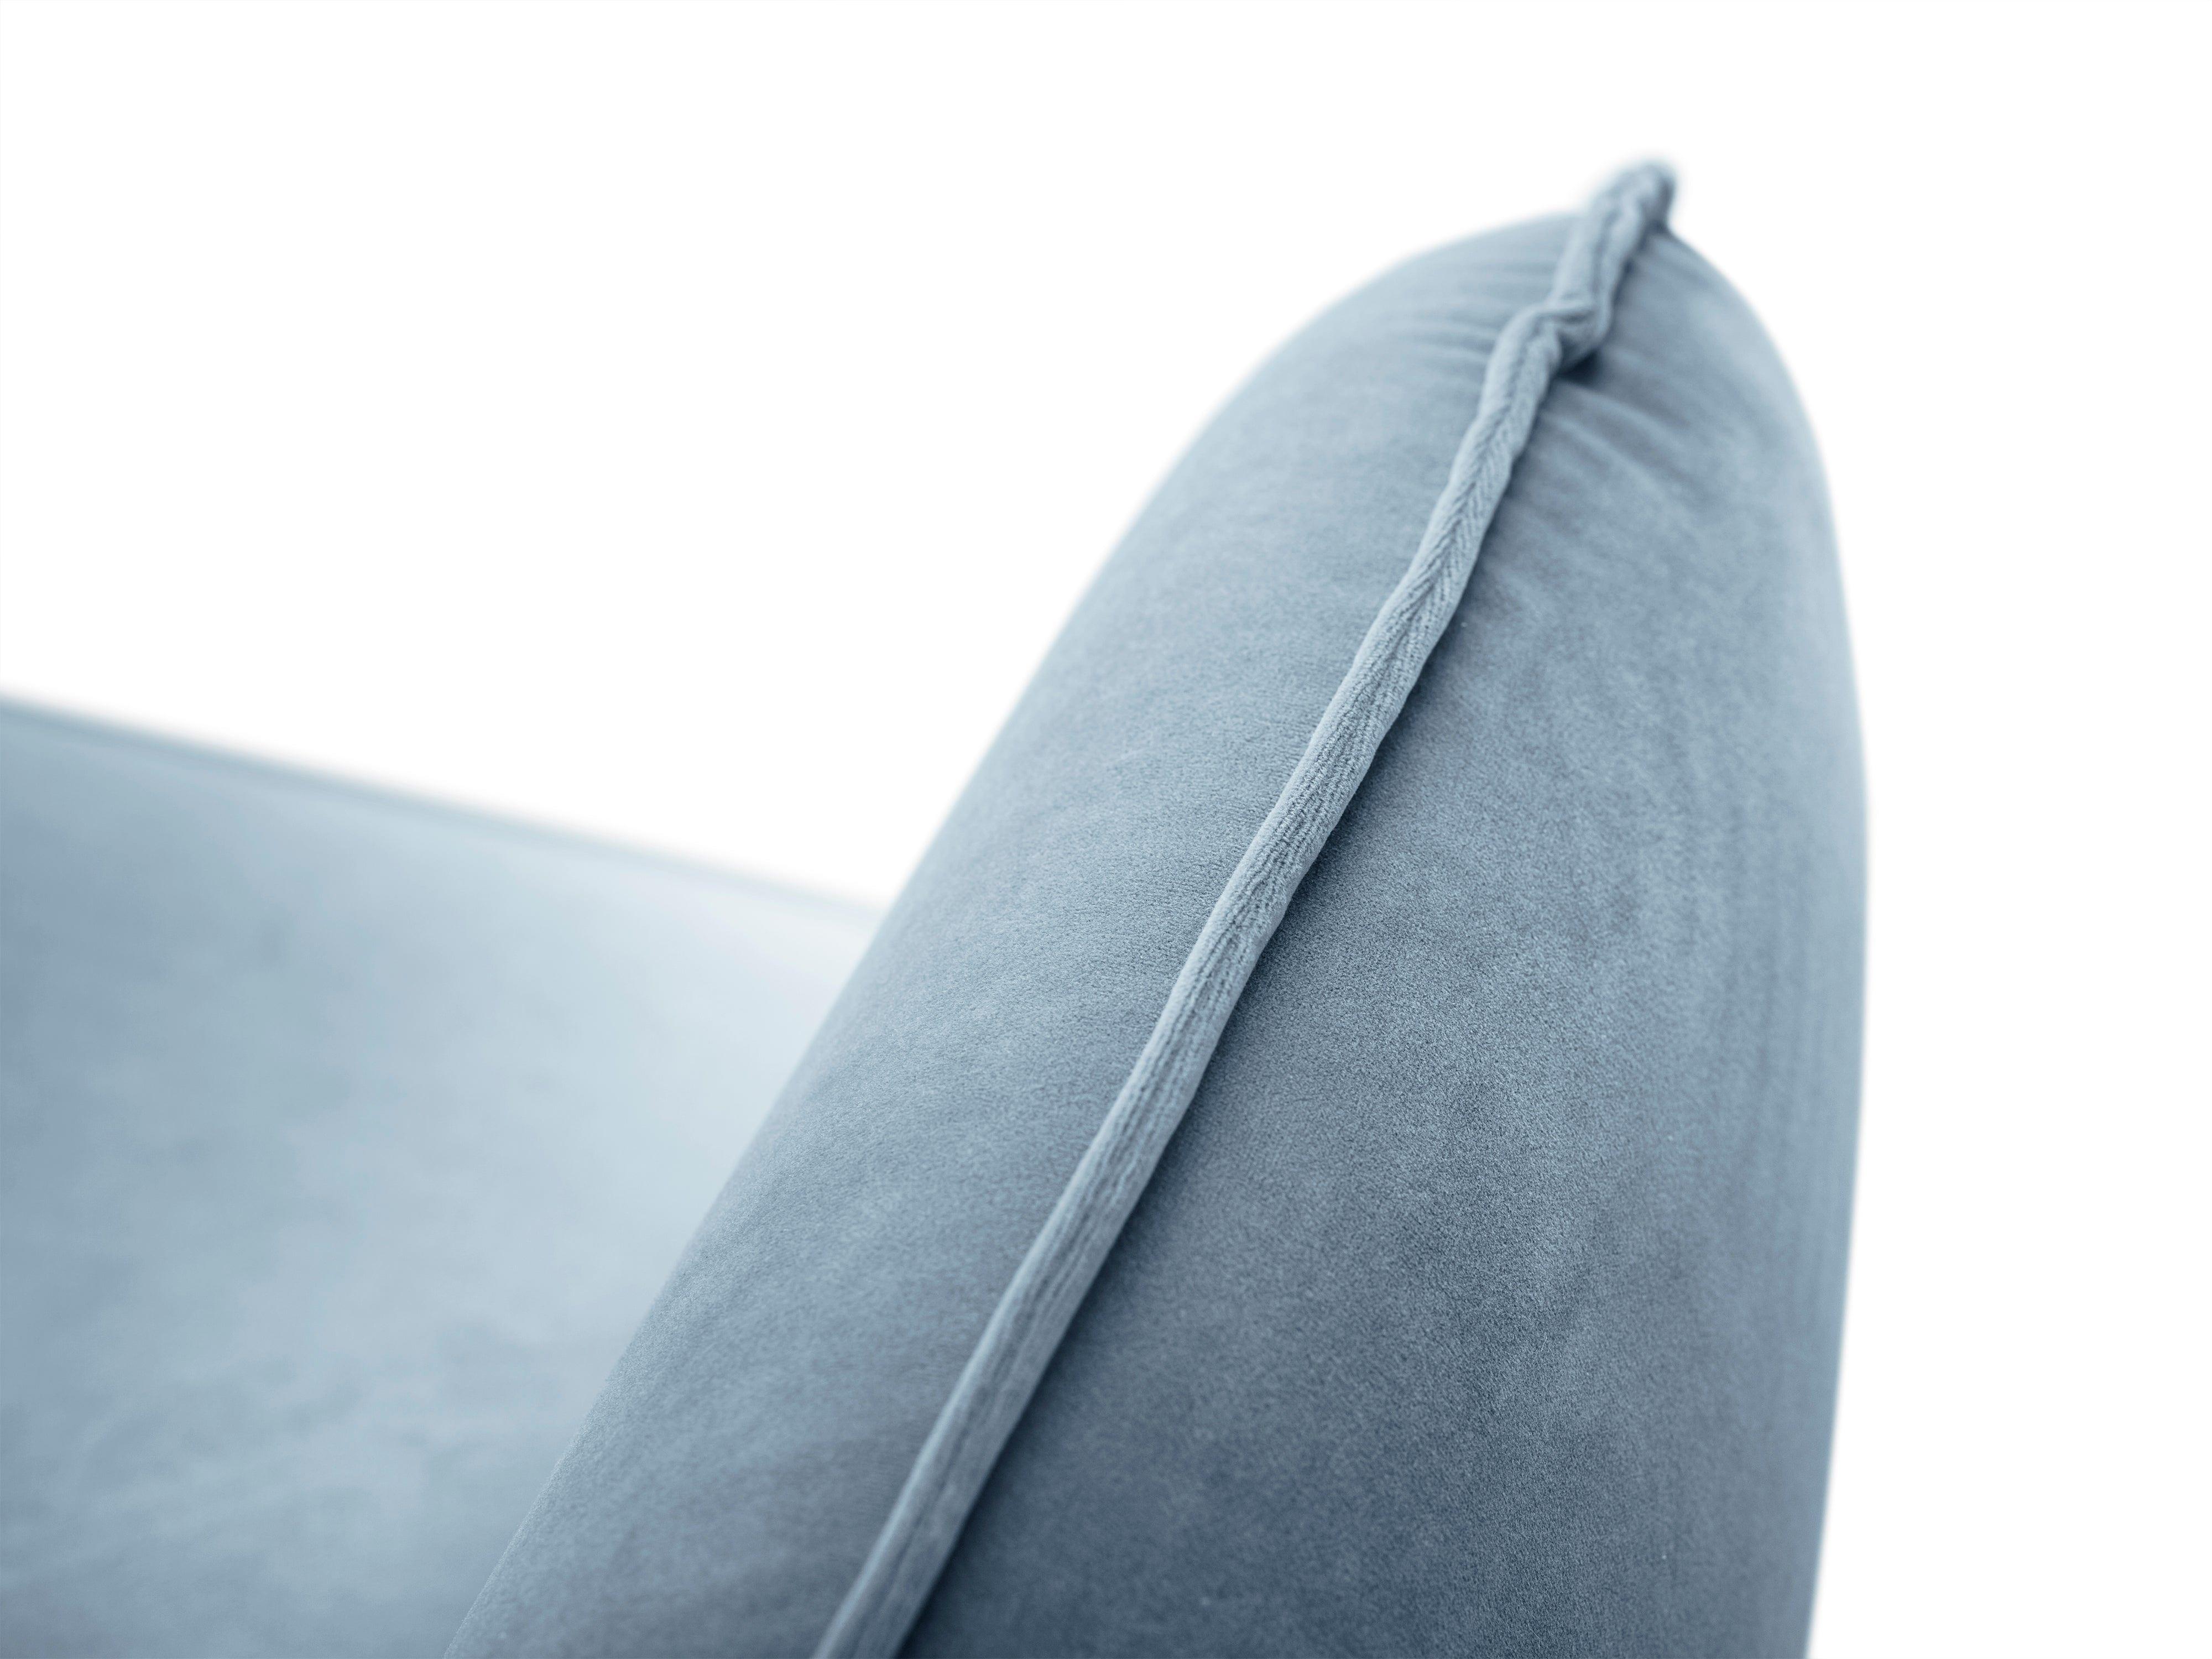 Sofa aksamitna 3-osobowa VIENNA jasnoniebieski ze złotą podstawą Cosmopolitan Design    Eye on Design